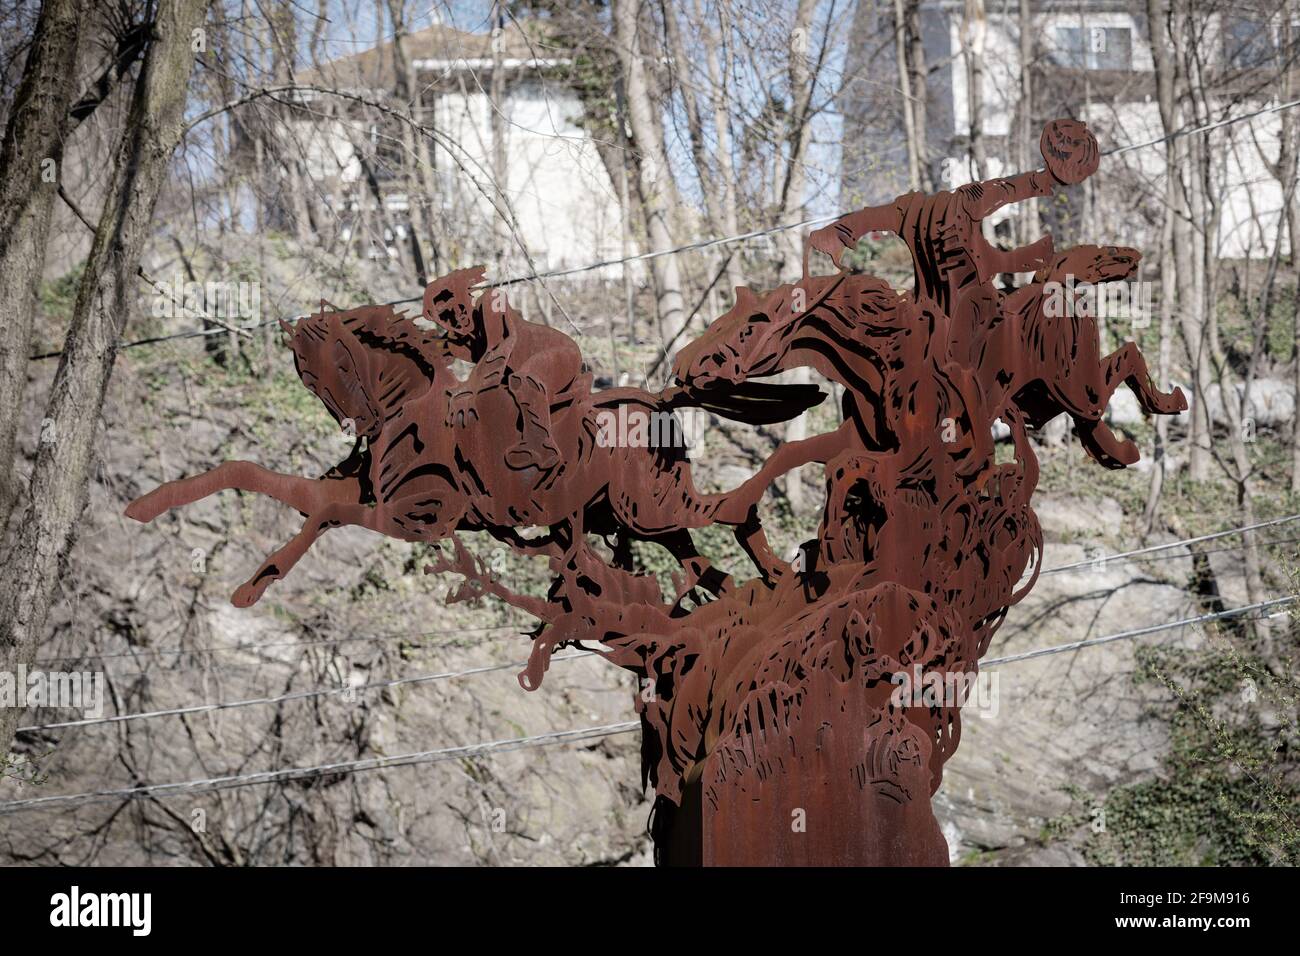 La scultura del cavaliere senza testa, tratta dalla storia di Washingon Irving "la leggenda di Sleepy Hollow", si trova nella sua città natale, Tarrytown, New York. Foto Stock